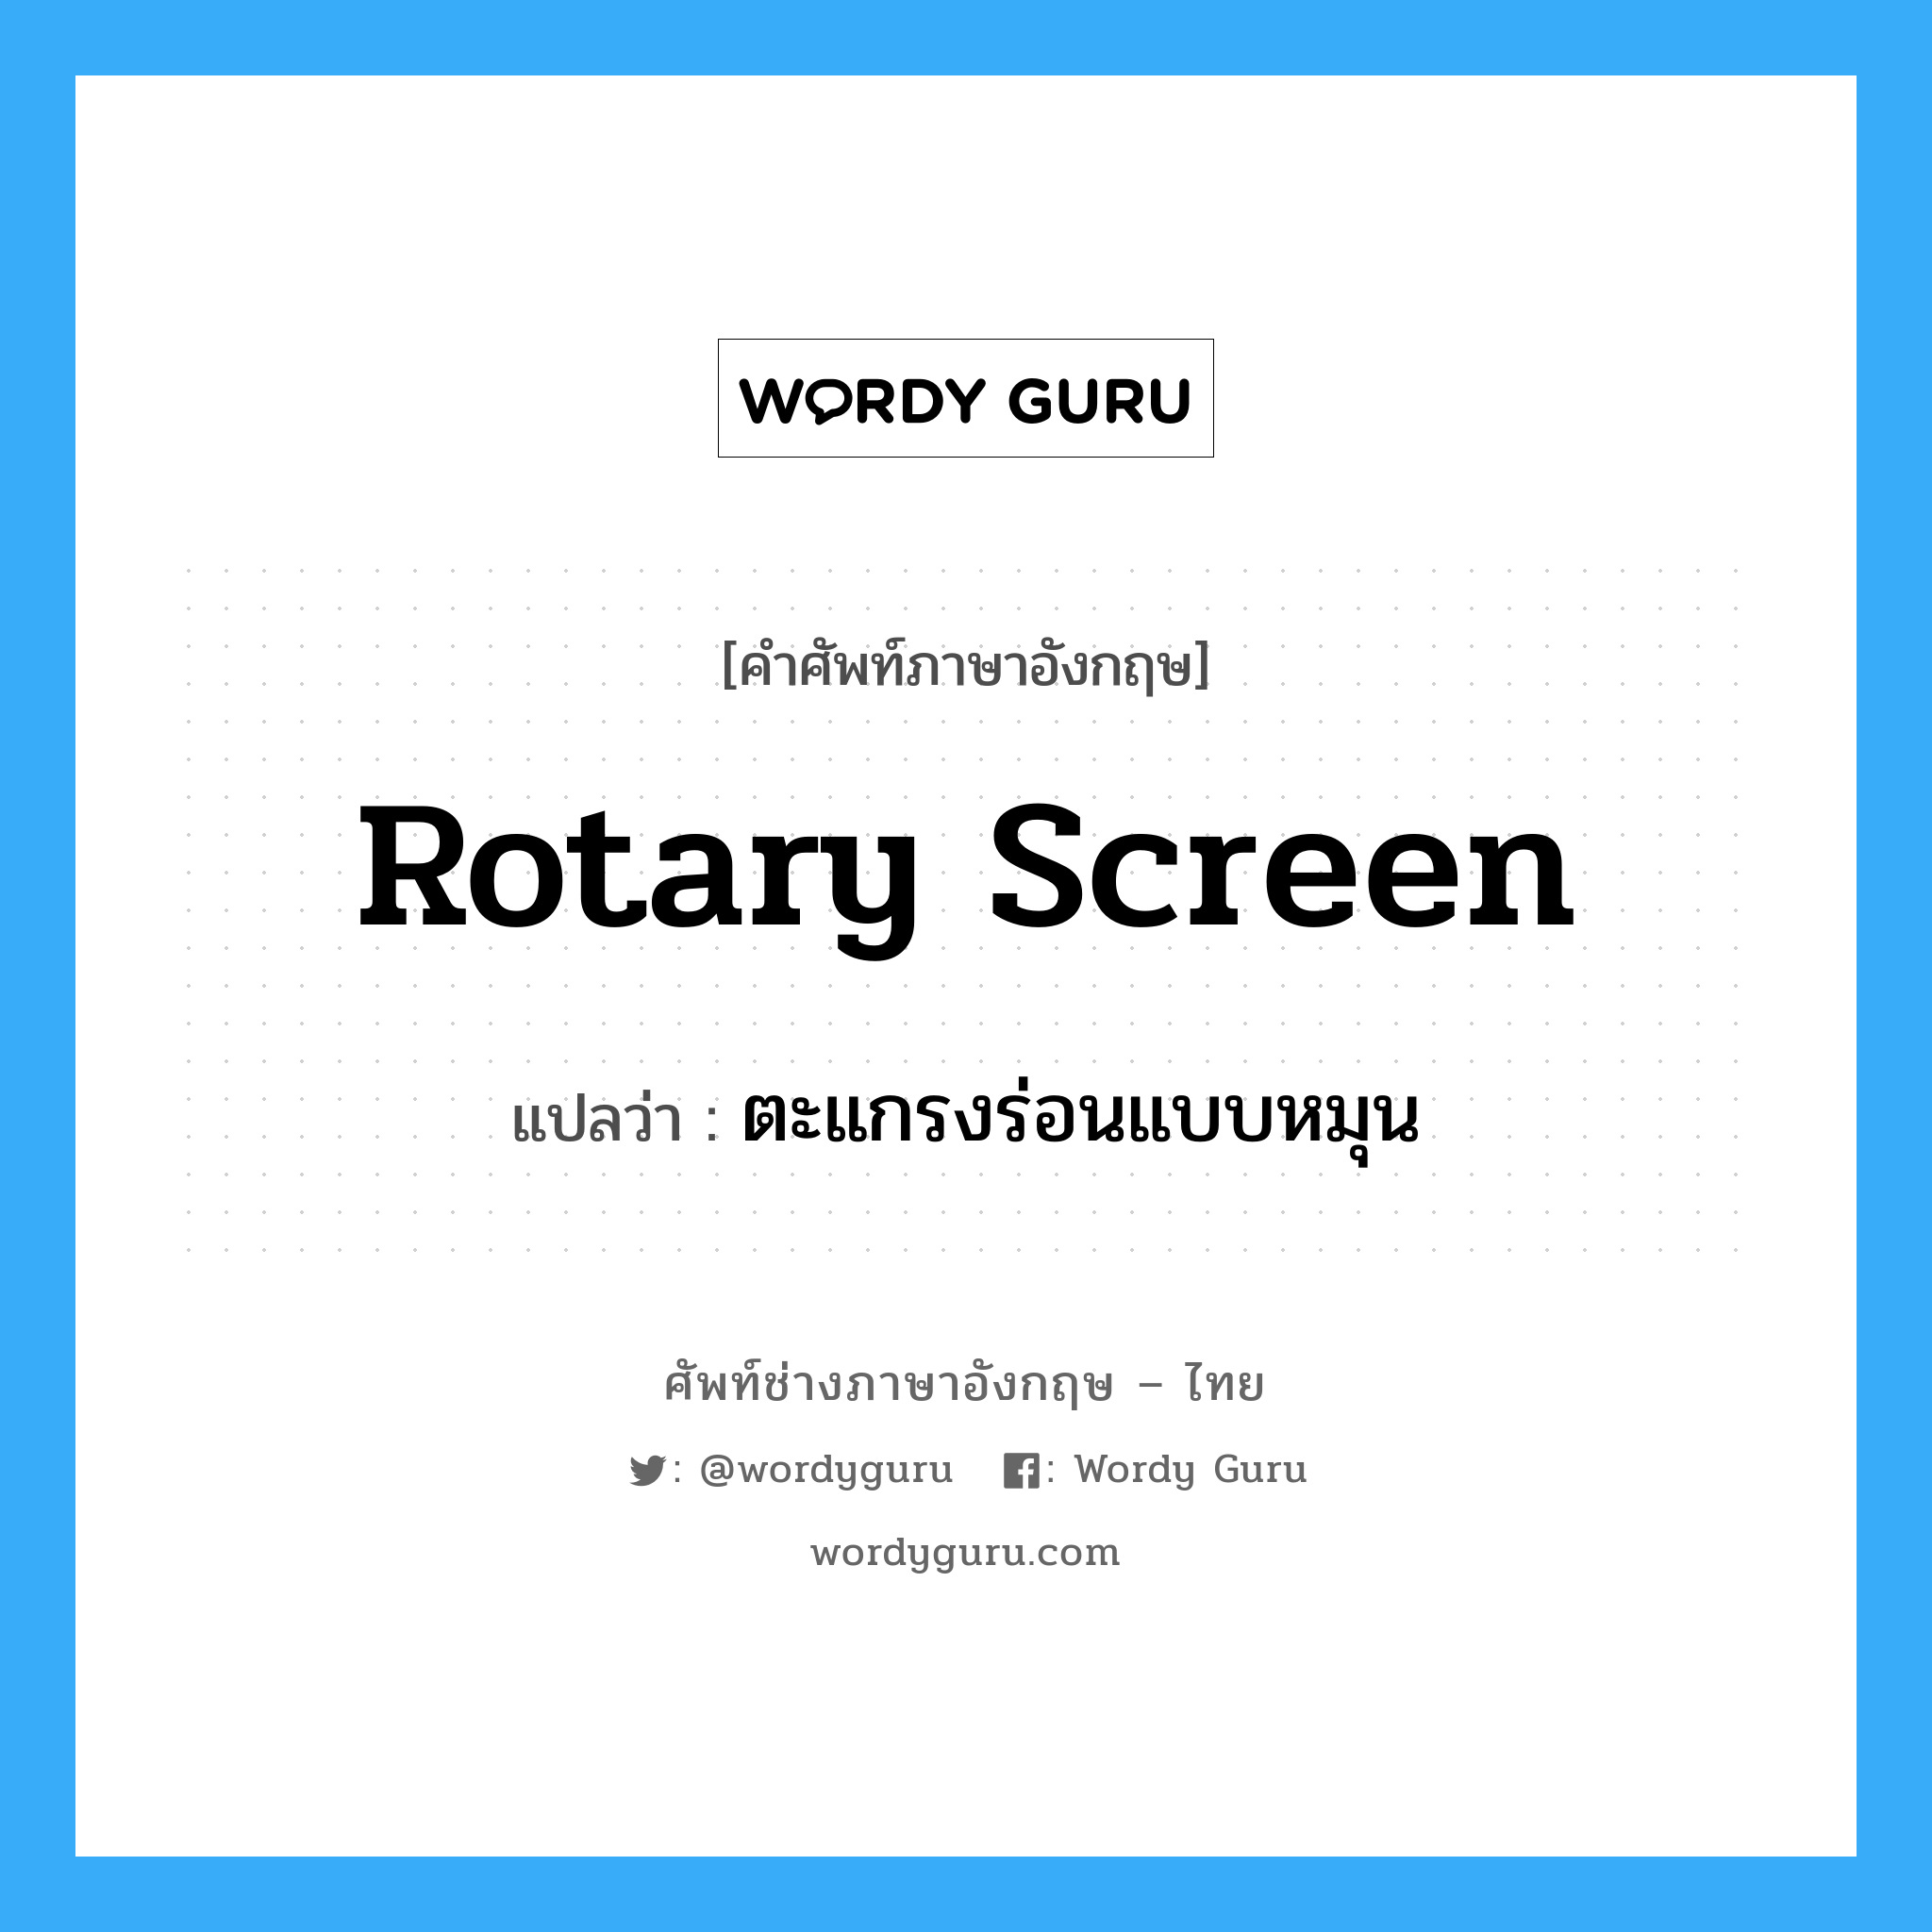 rotary screen แปลว่า?, คำศัพท์ช่างภาษาอังกฤษ - ไทย rotary screen คำศัพท์ภาษาอังกฤษ rotary screen แปลว่า ตะแกรงร่อนแบบหมุน